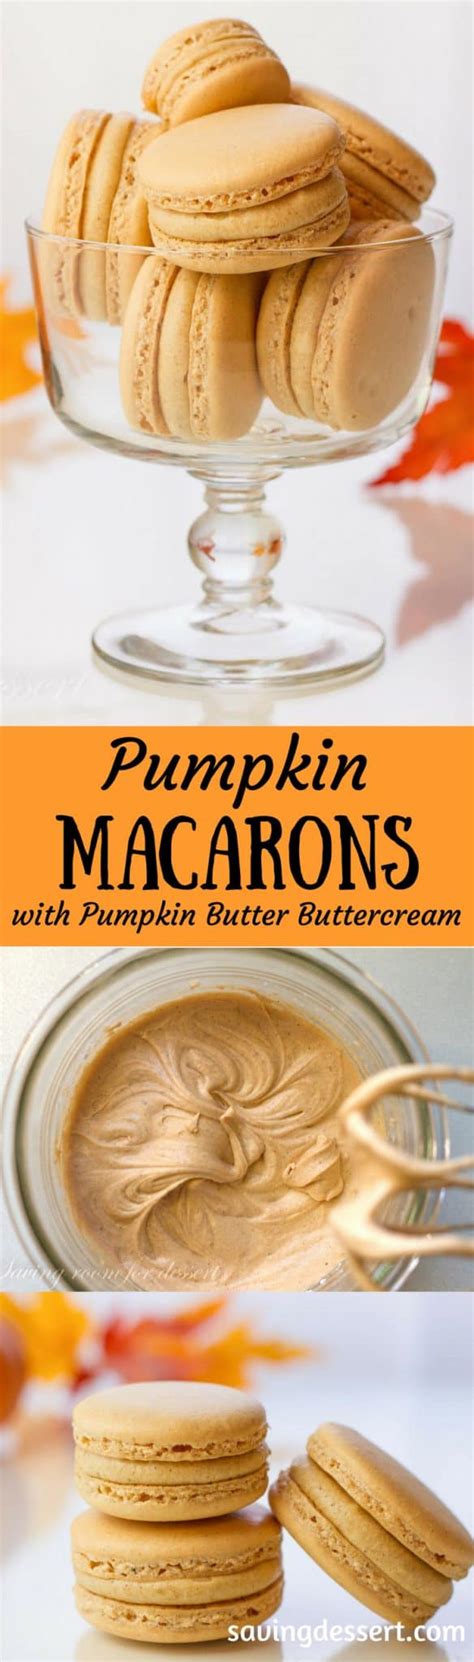 Pumpkin Macarons With Pumpkin Butter Buttercream Saving